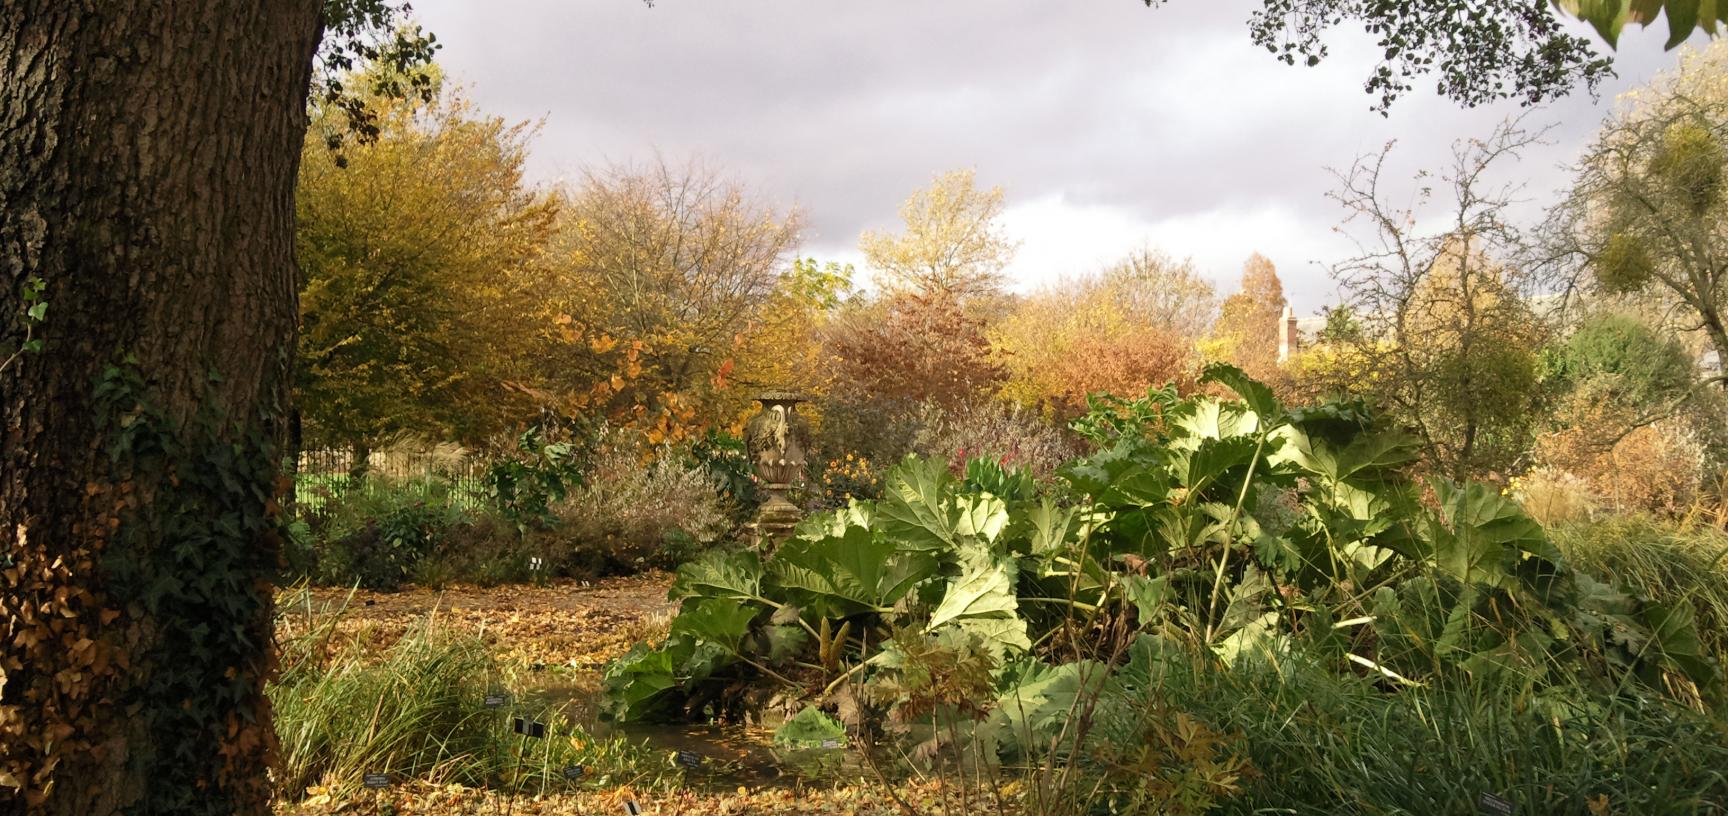 Bog Garden in Autumn